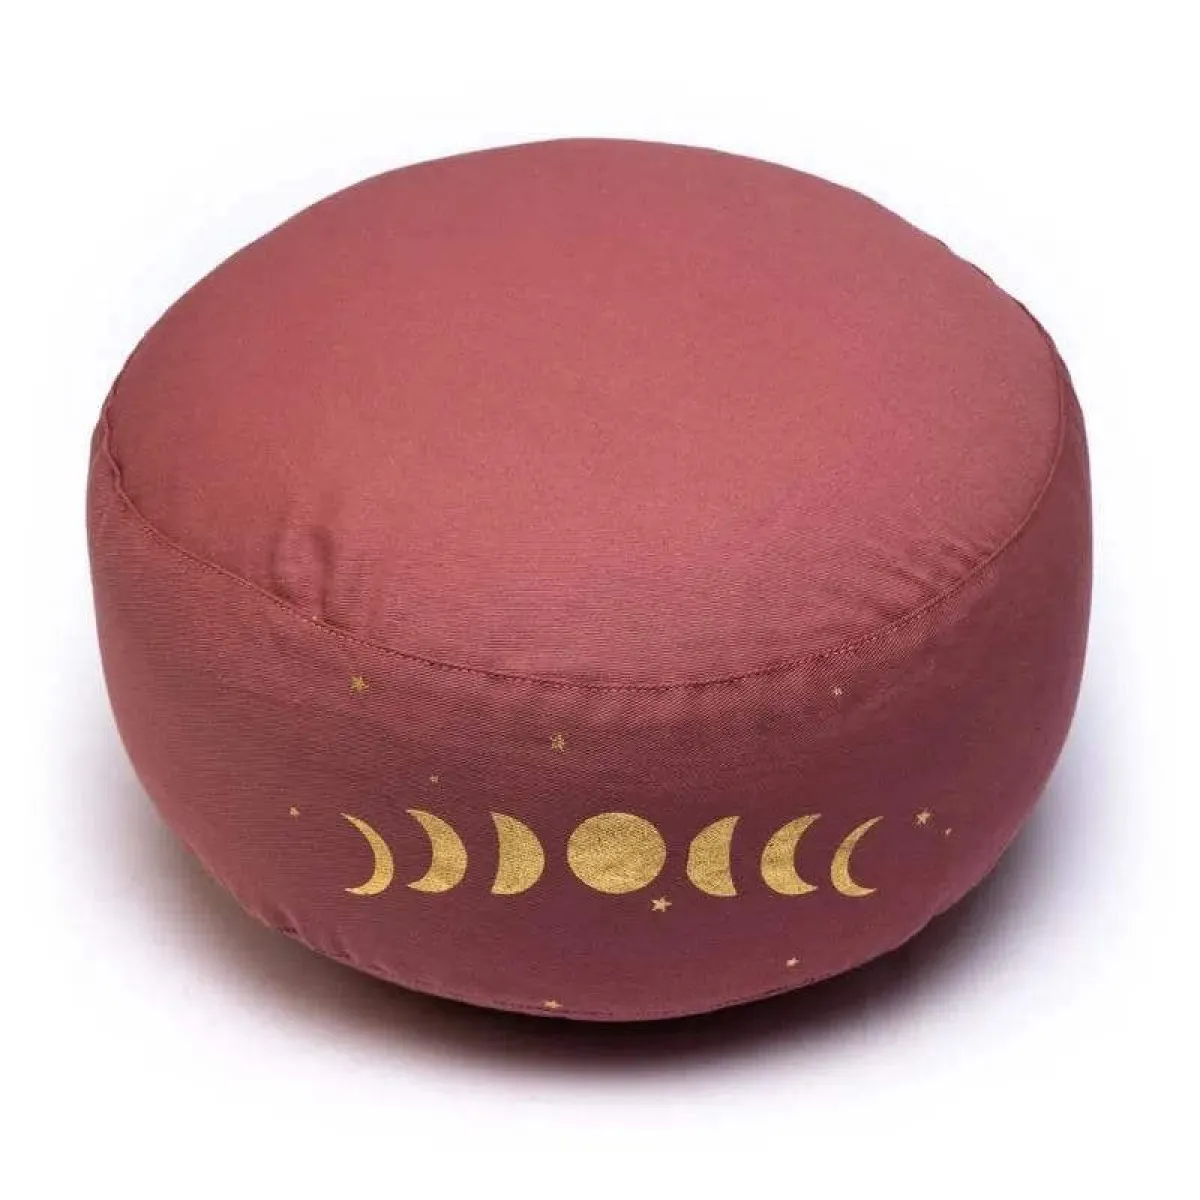 Cojín de meditación/yoga 33x17 cm rosa oscuro con fase lunar